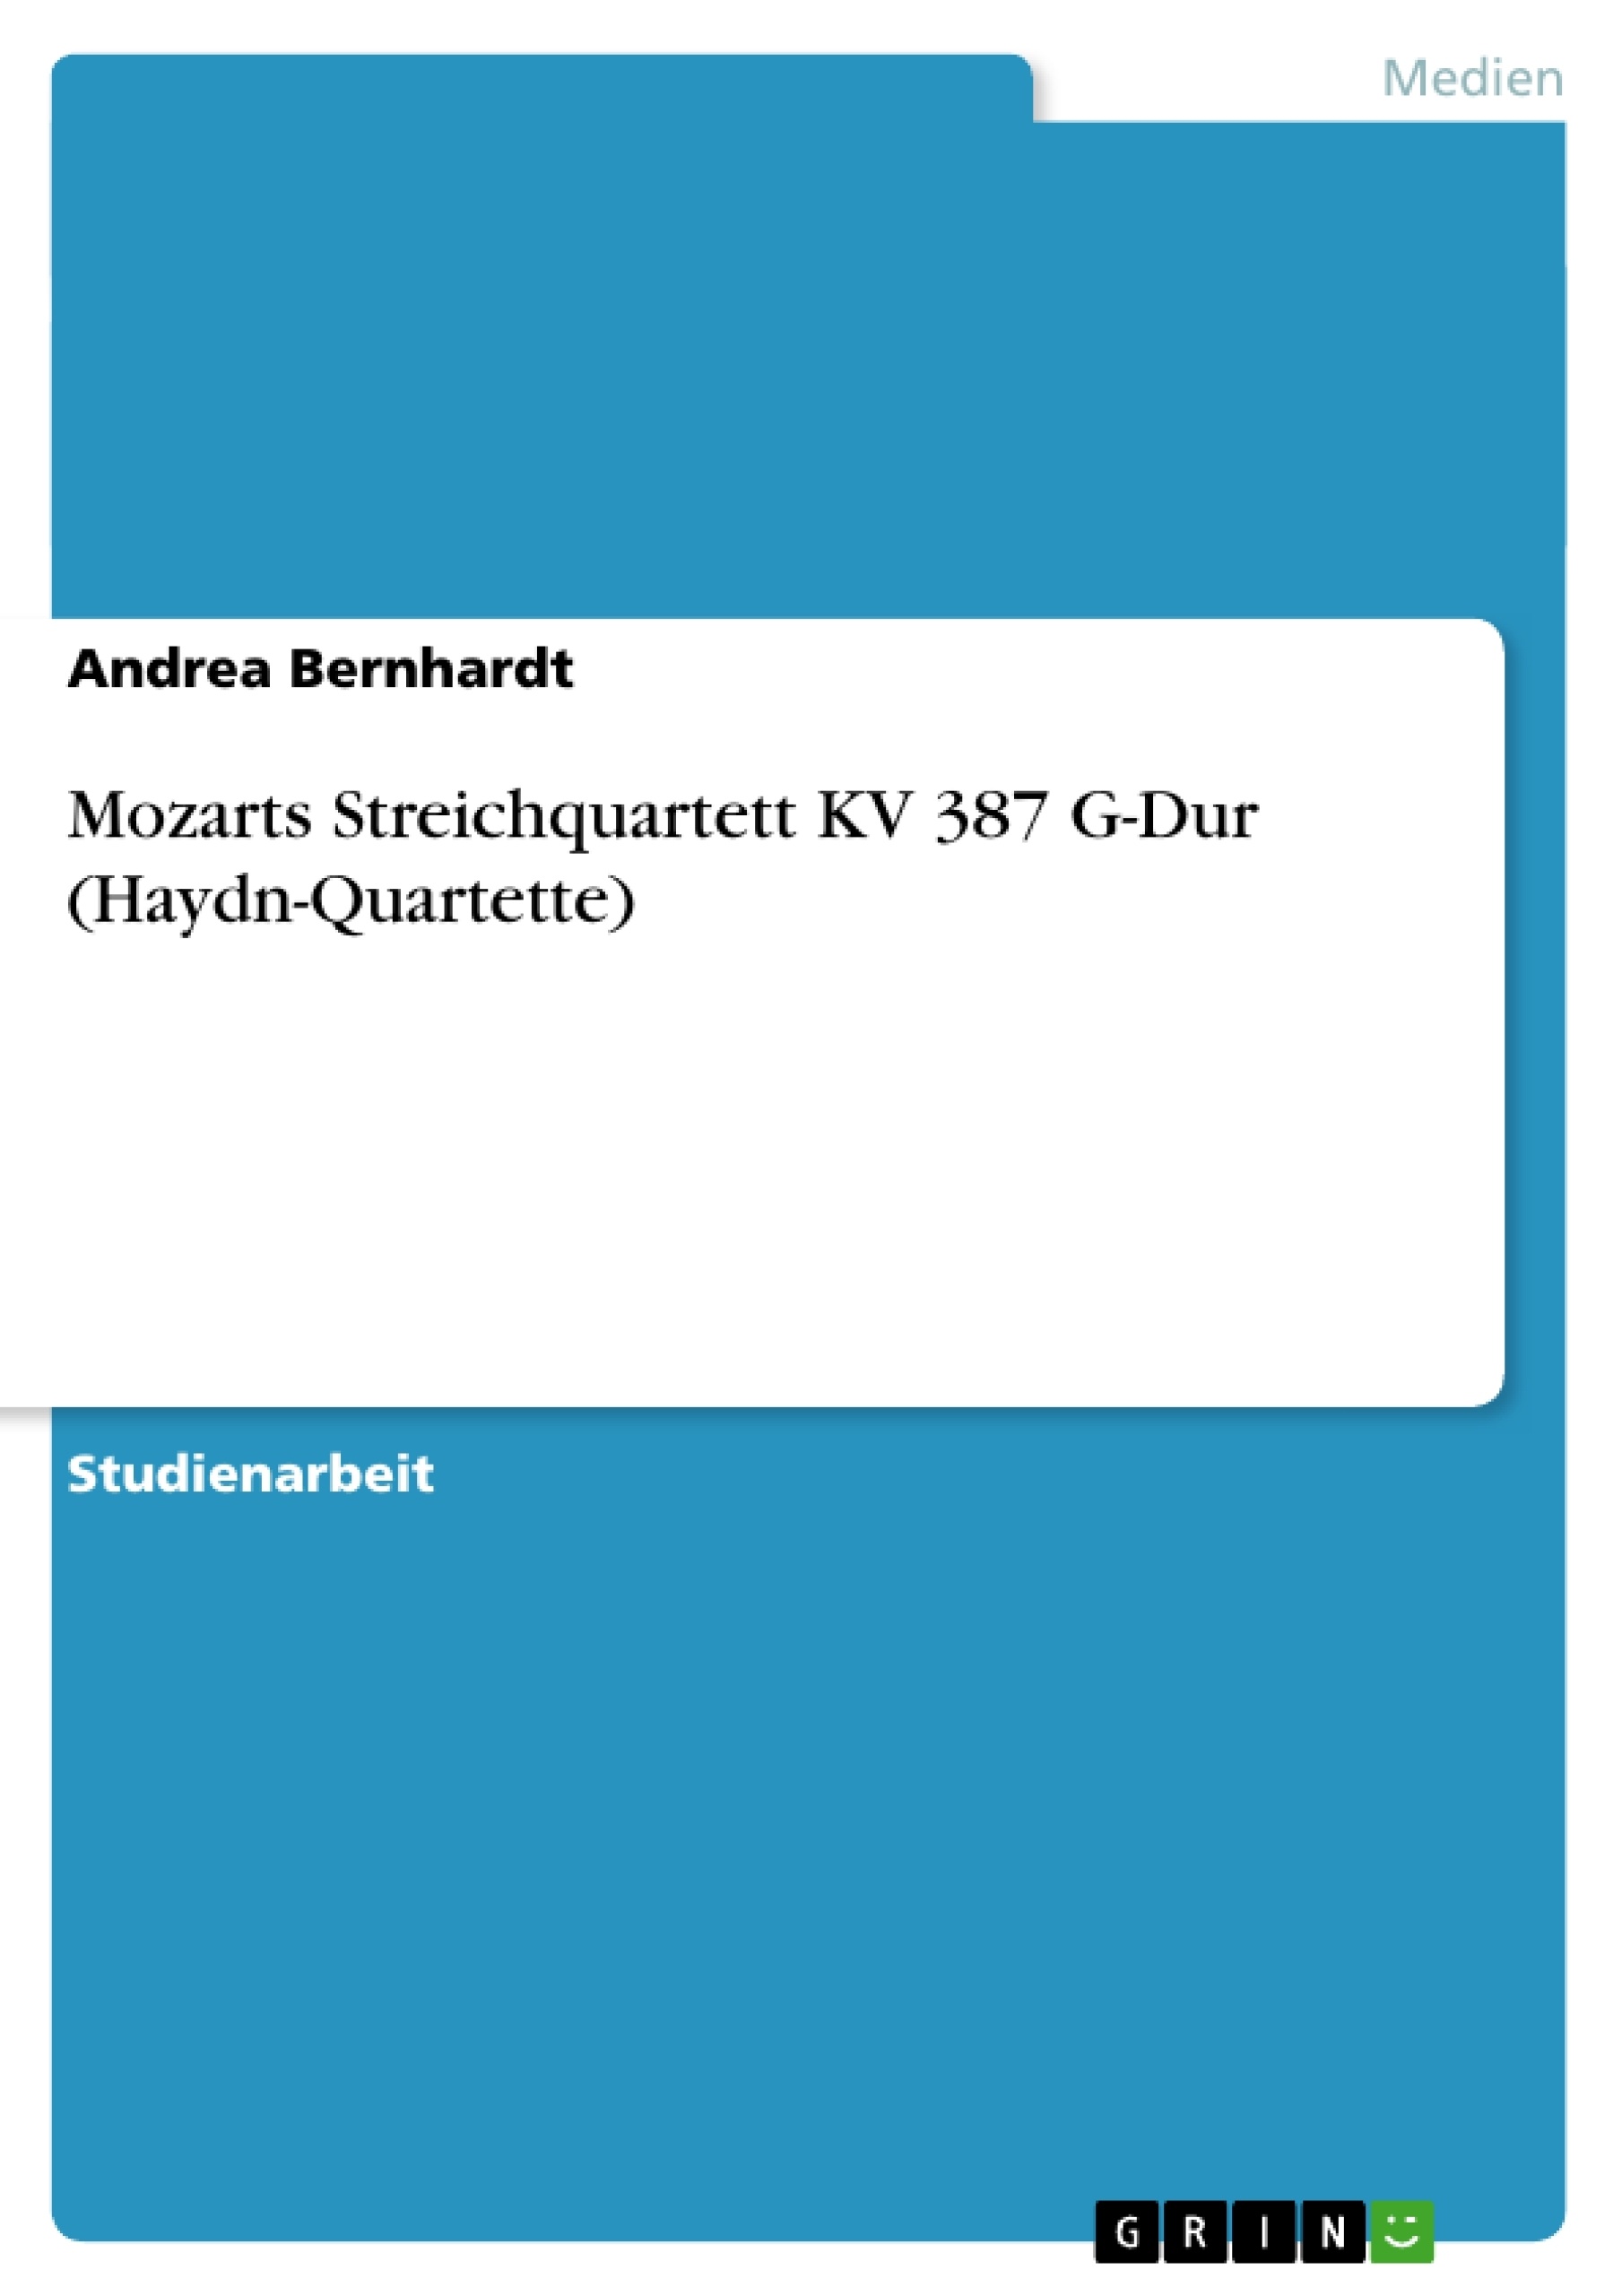 Titre: Mozarts Streichquartett KV 387 G-Dur (Haydn-Quartette)